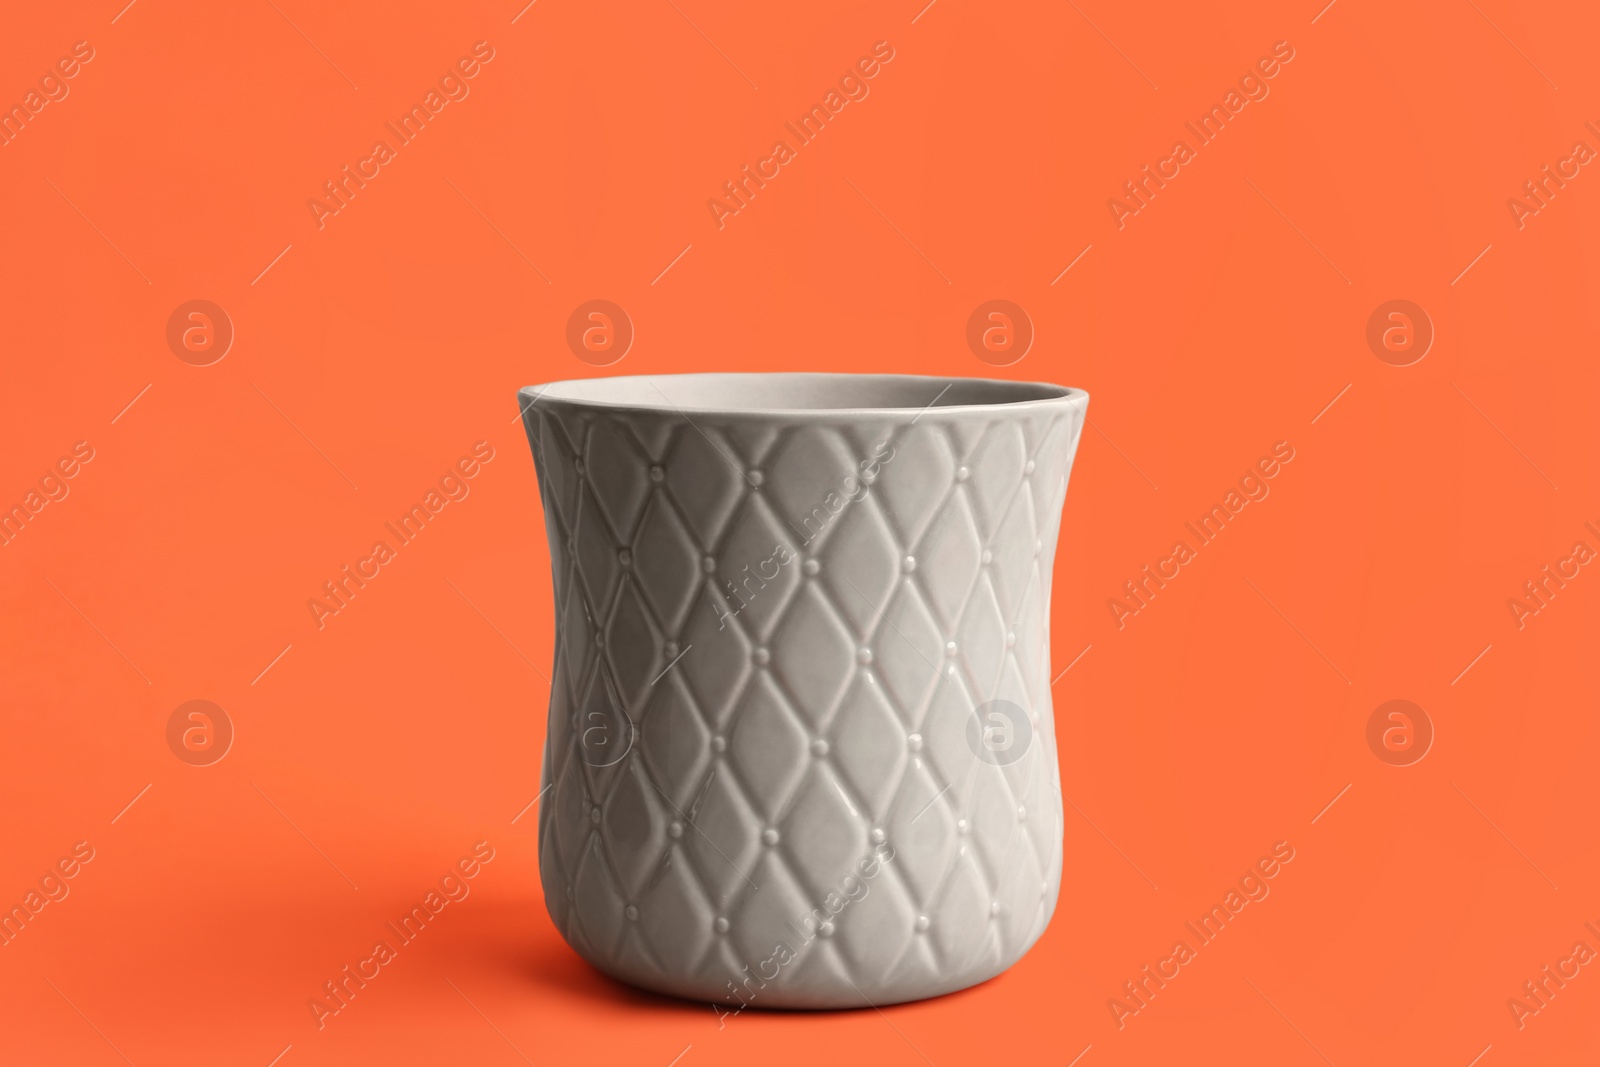 Photo of Stylish empty ceramic vase on orange background